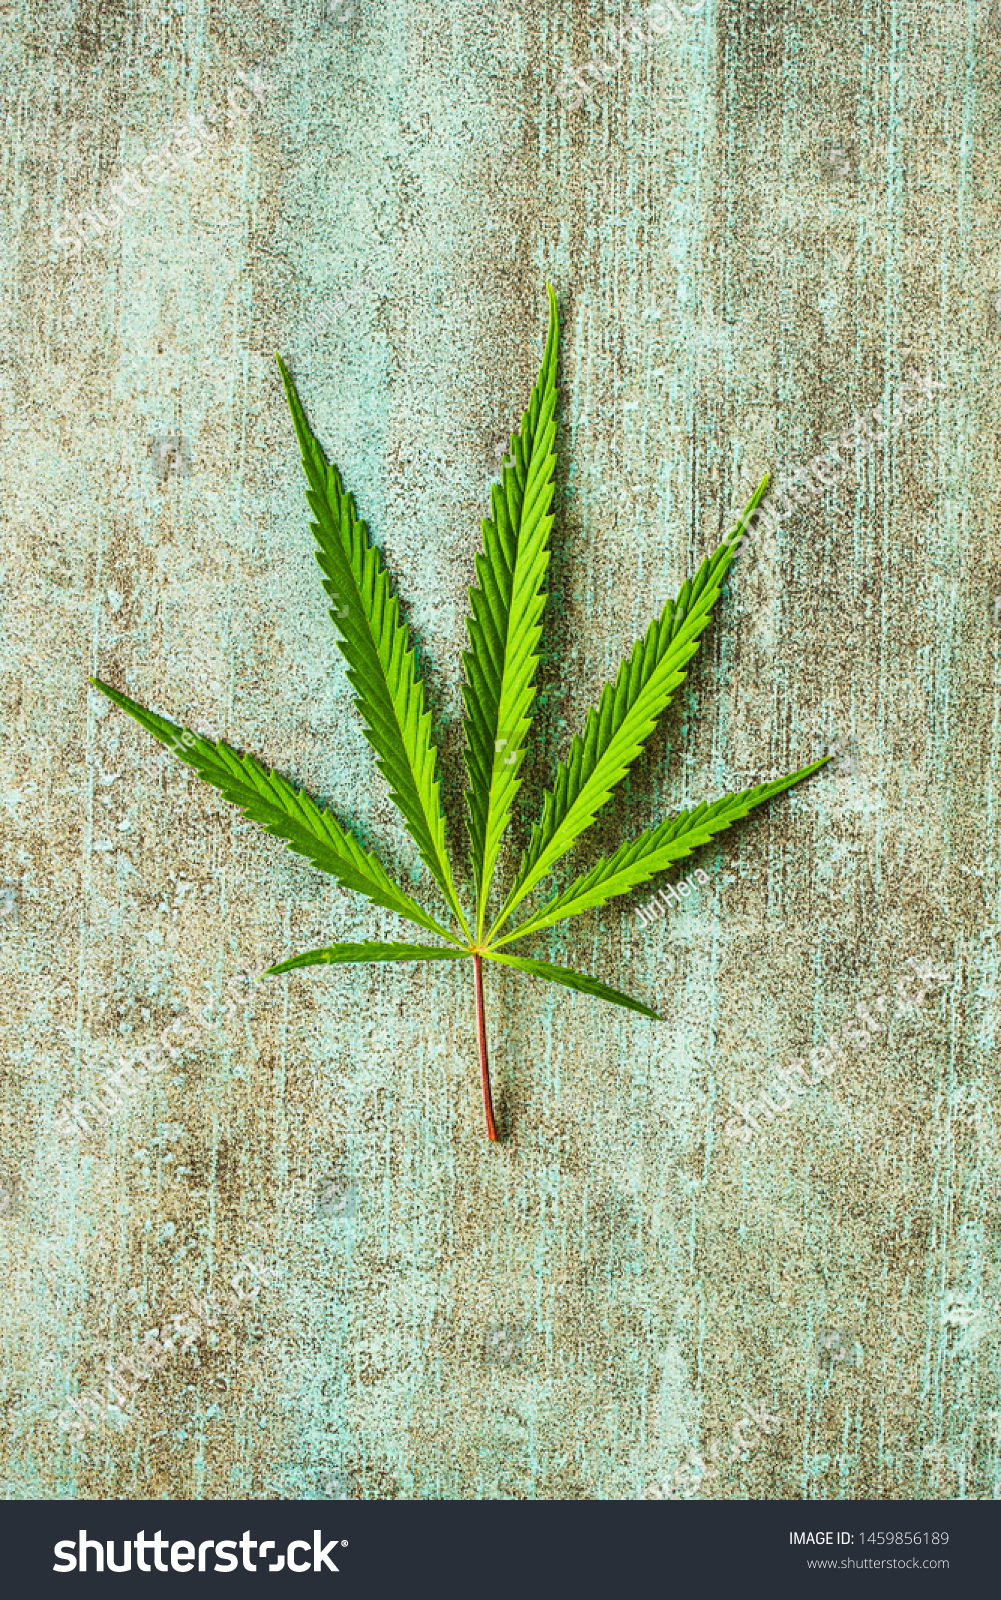 Marijuana cannabis leaf on old table. #1459856189